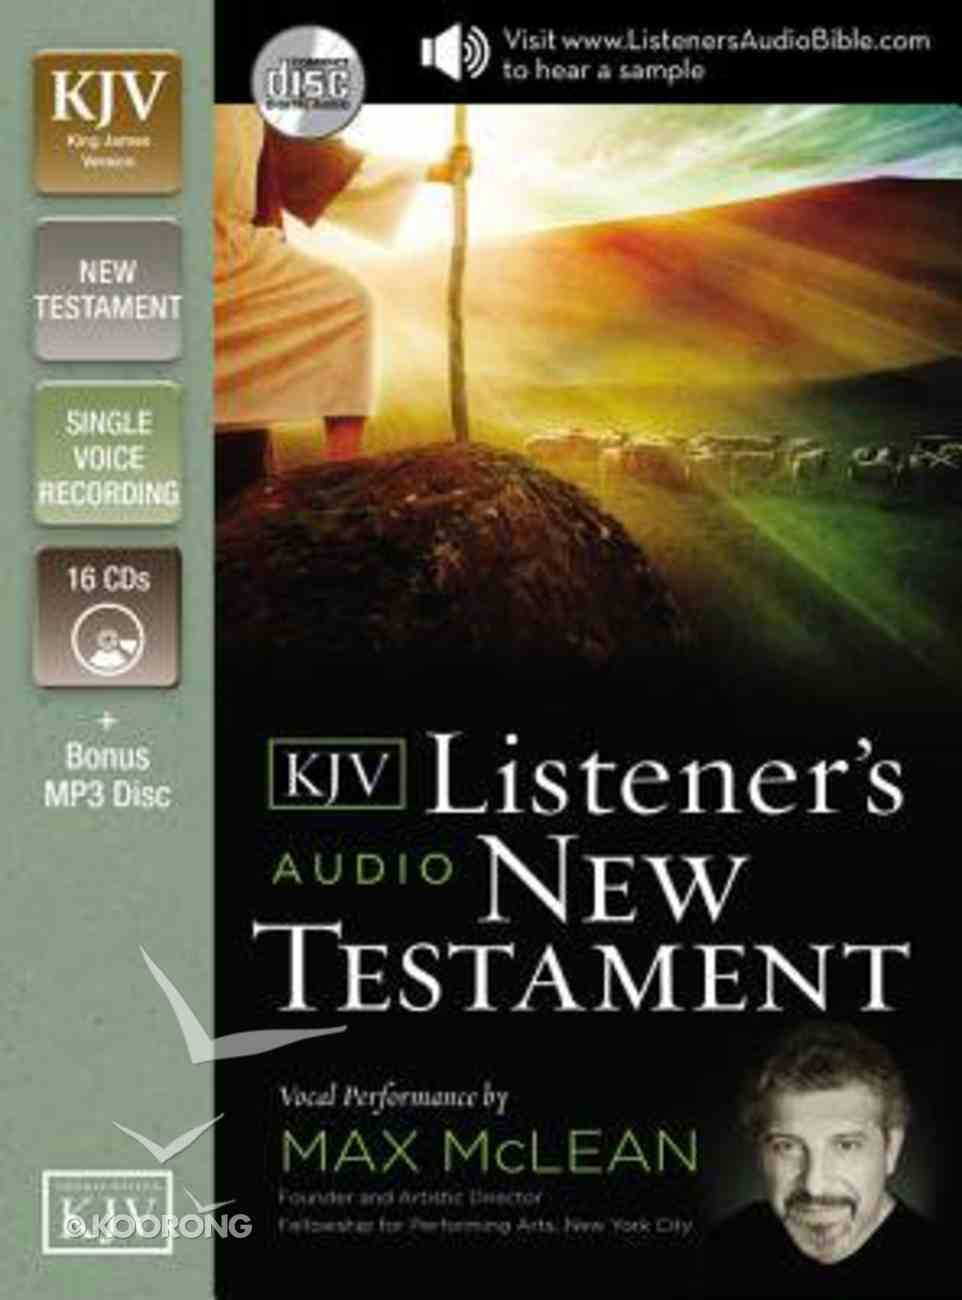 The KJV Listener's Audio New Testament CD